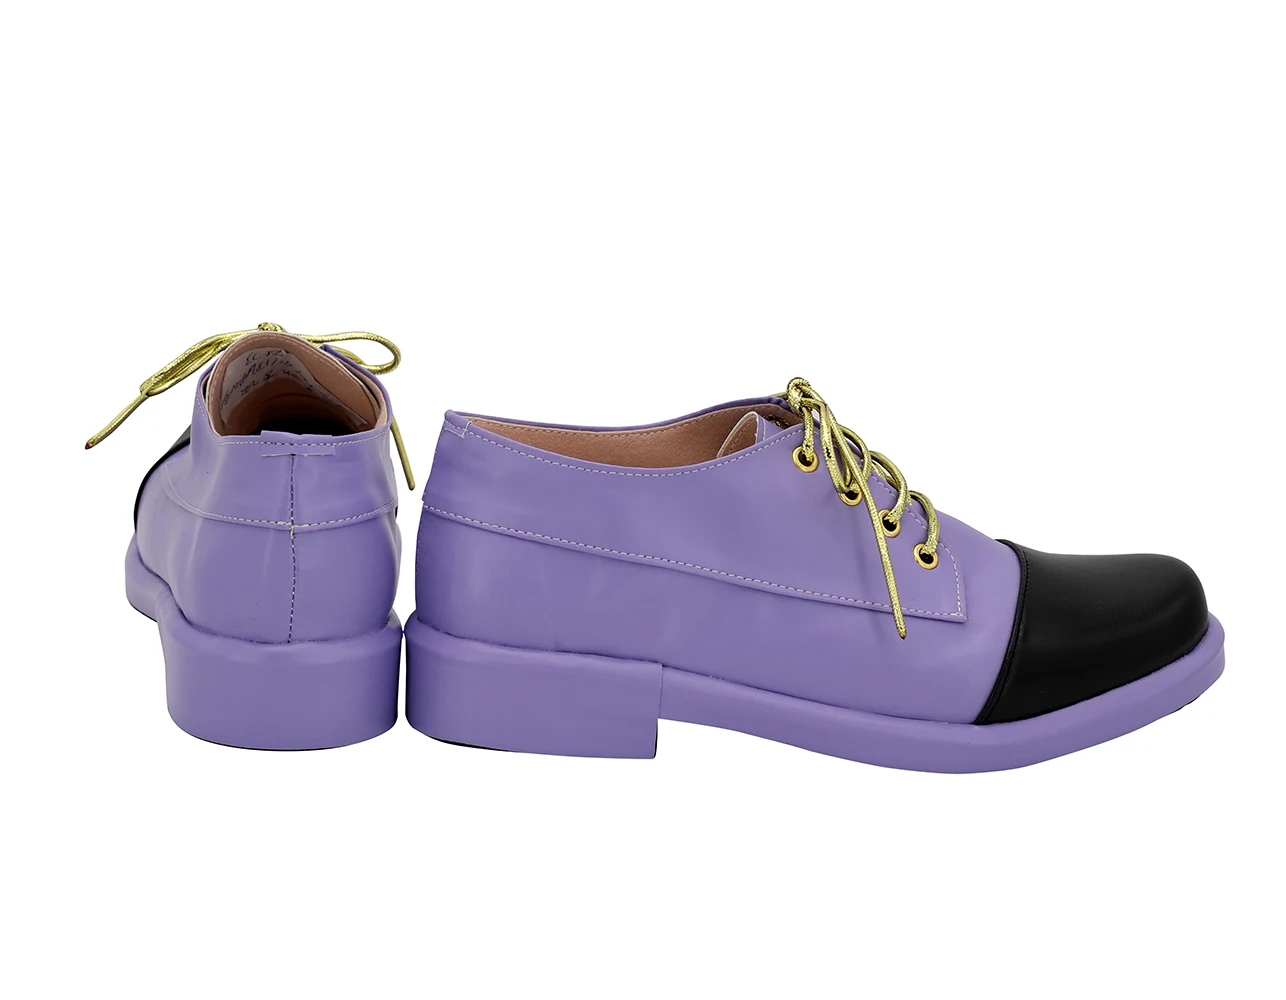 JOJO Jotaro/Обувь для костюмированной вечеринки; обувь для костюмированной вечеринки JoJo's bighure Adventure 4 Jotaro Kujo; фиолетовые ботинки; обувь унисекс на заказ